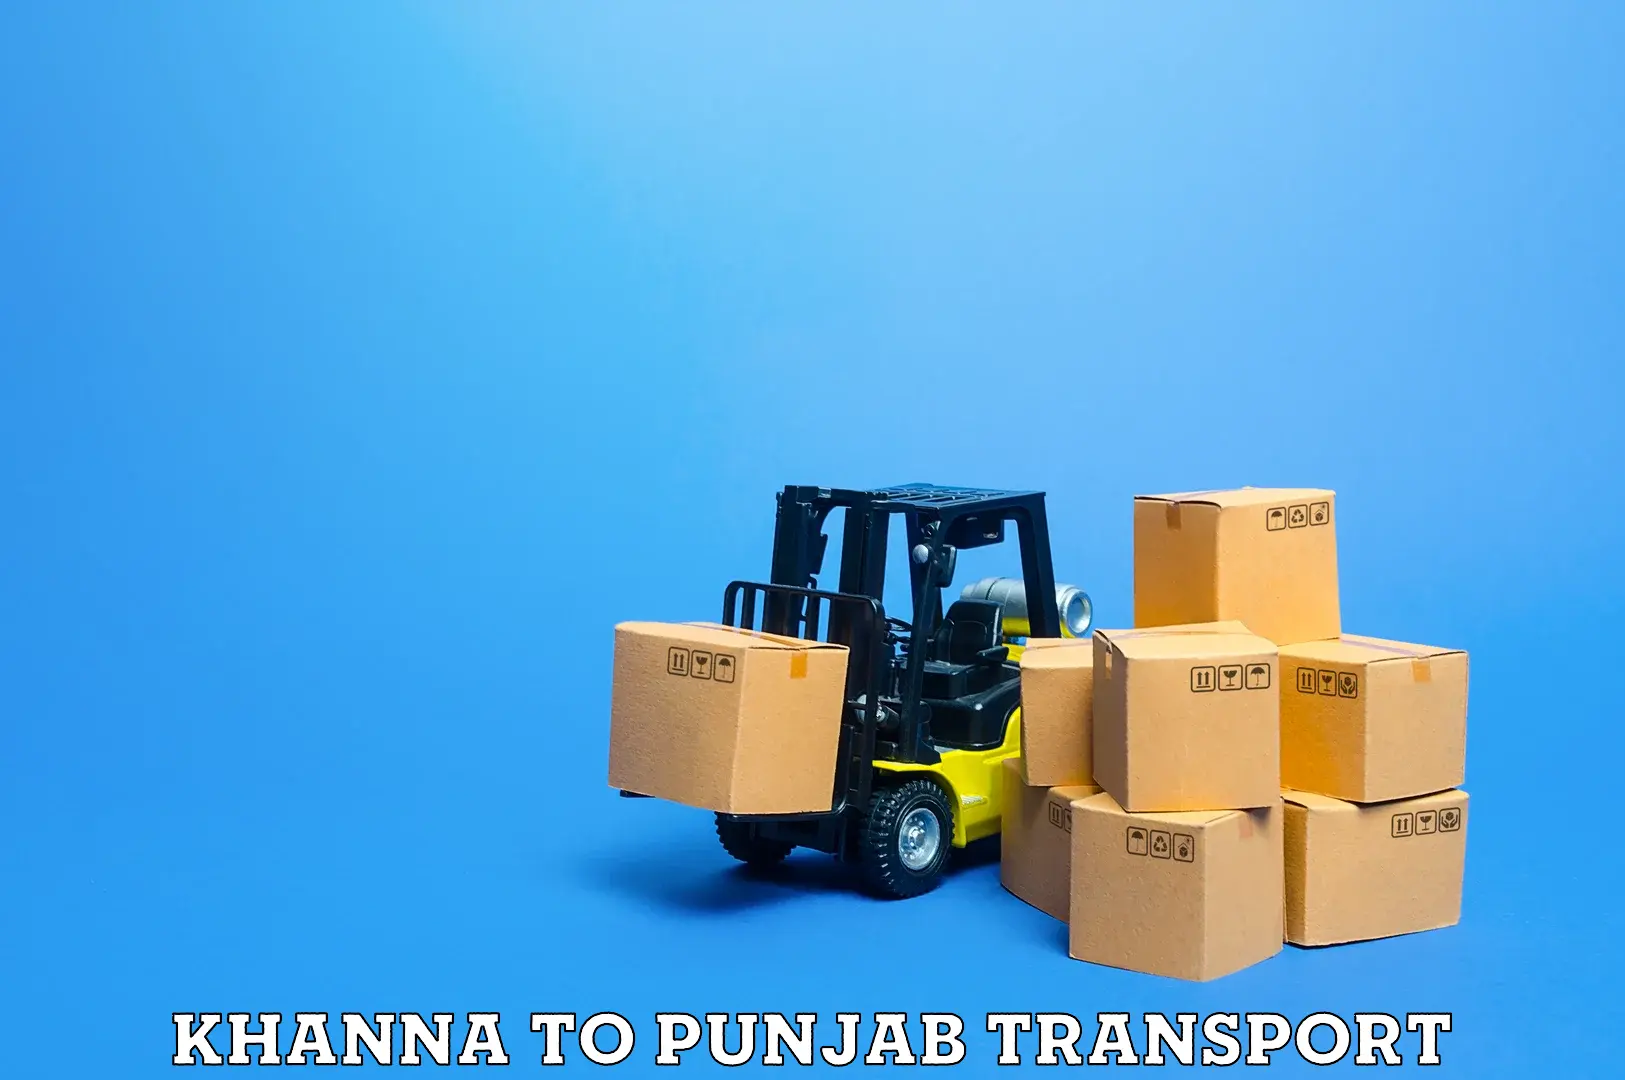 Nearest transport service Khanna to Jalandhar